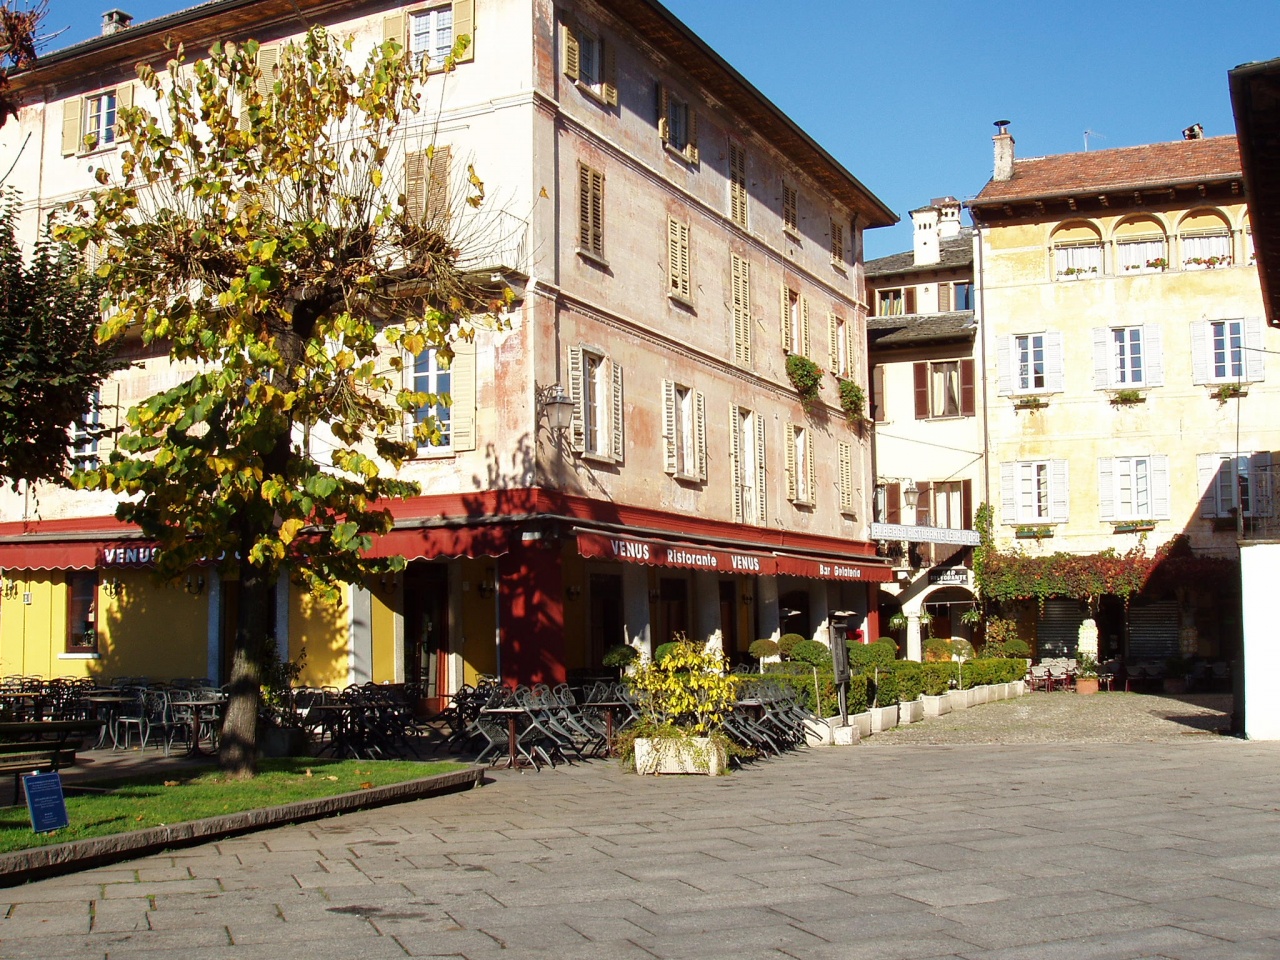  Orta  village